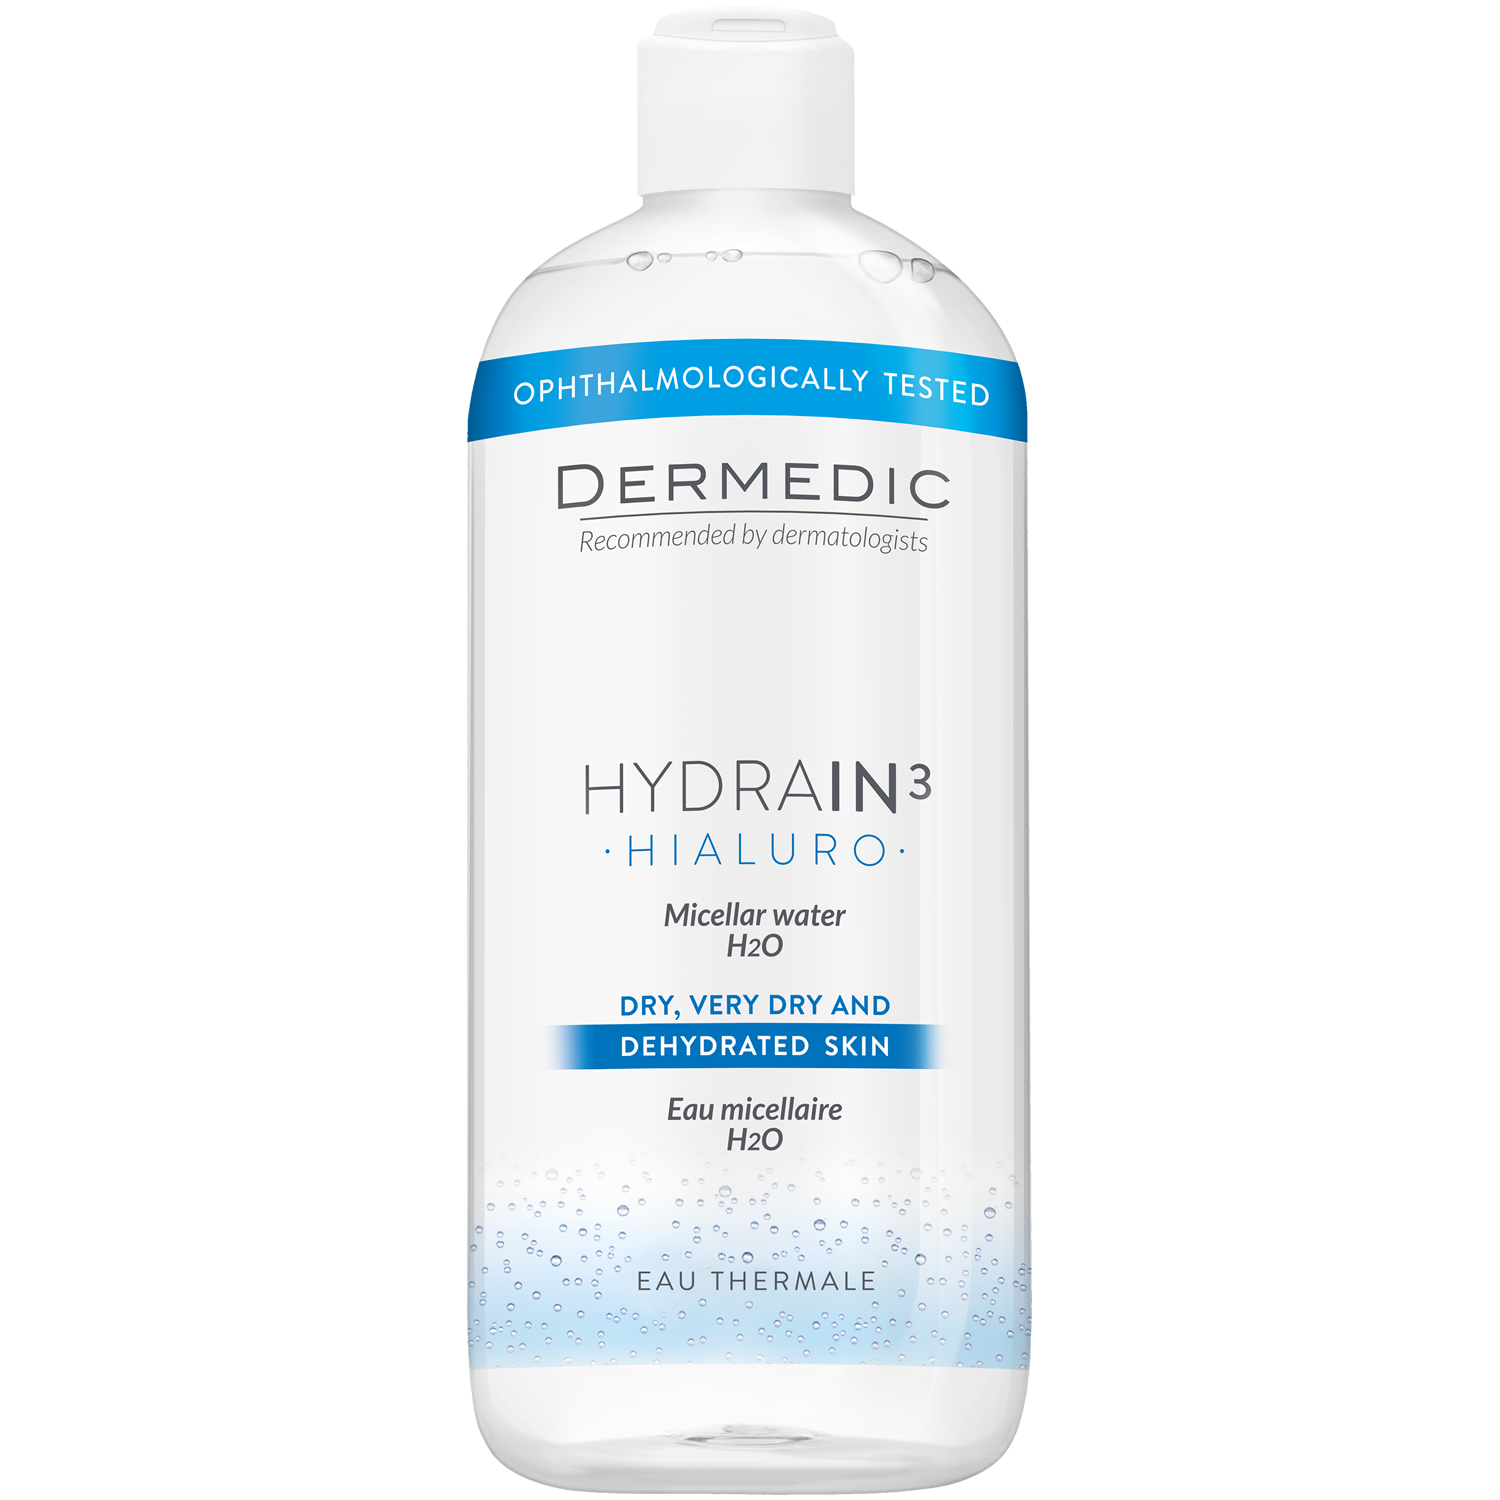 Dermedic Hydrain3 Hialuro мицеллярная вода H2O для лица, 500 мл dermedic hydrain3 hialuro мицеллярная жидкость 500 ml